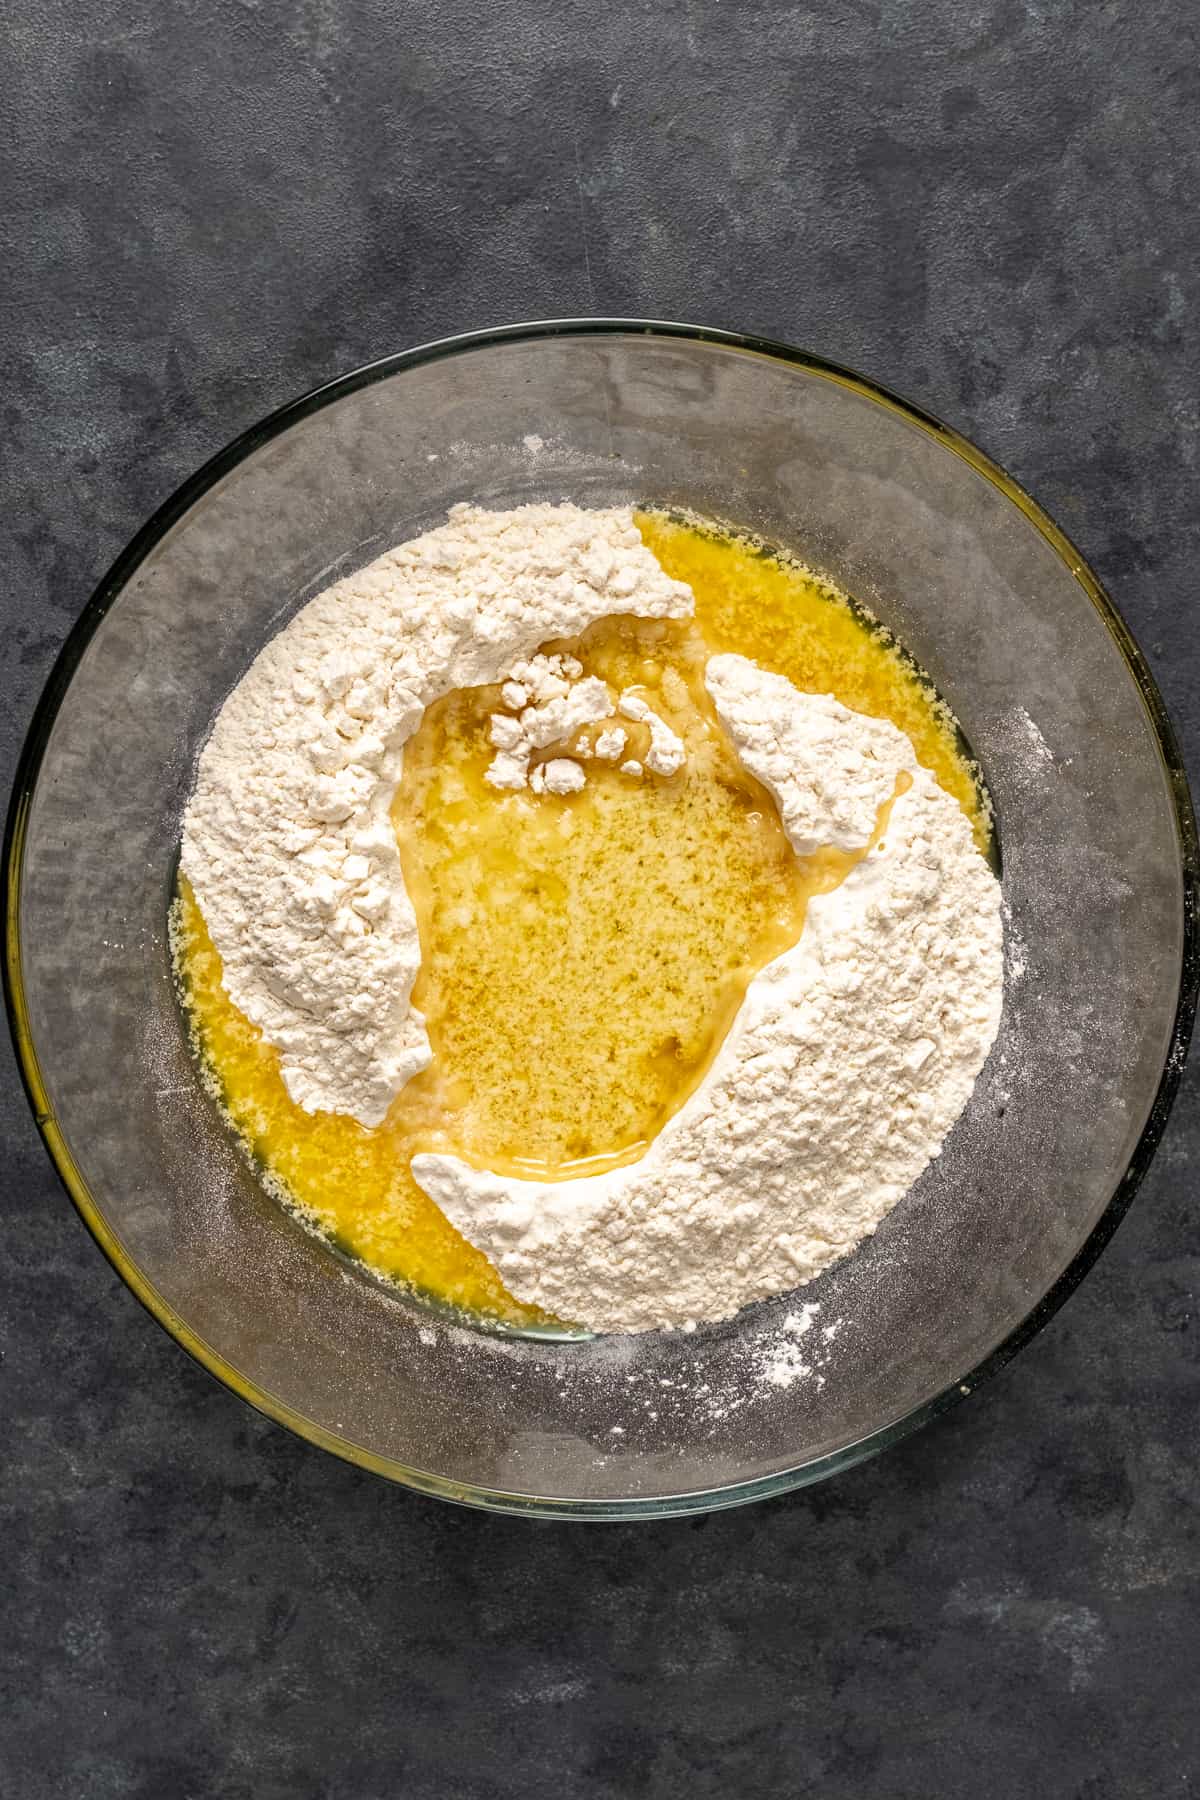 将蛋糕粉和融化的黄油倒入玻璃碗中。